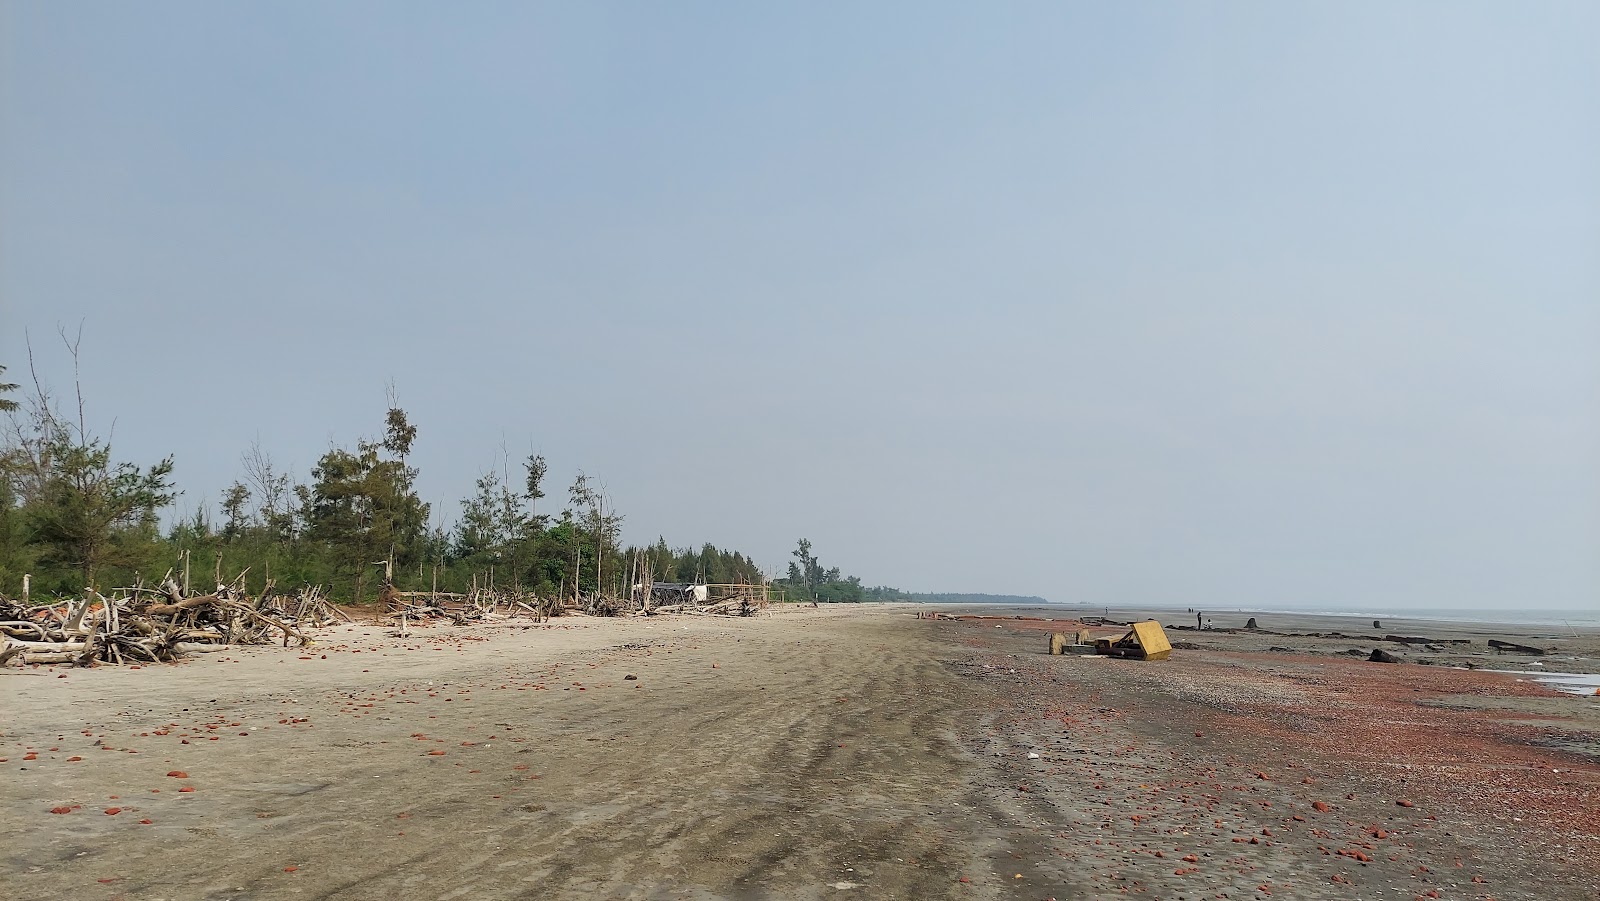 Zdjęcie Gobardhanpur Beach z powierzchnią jasny piasek